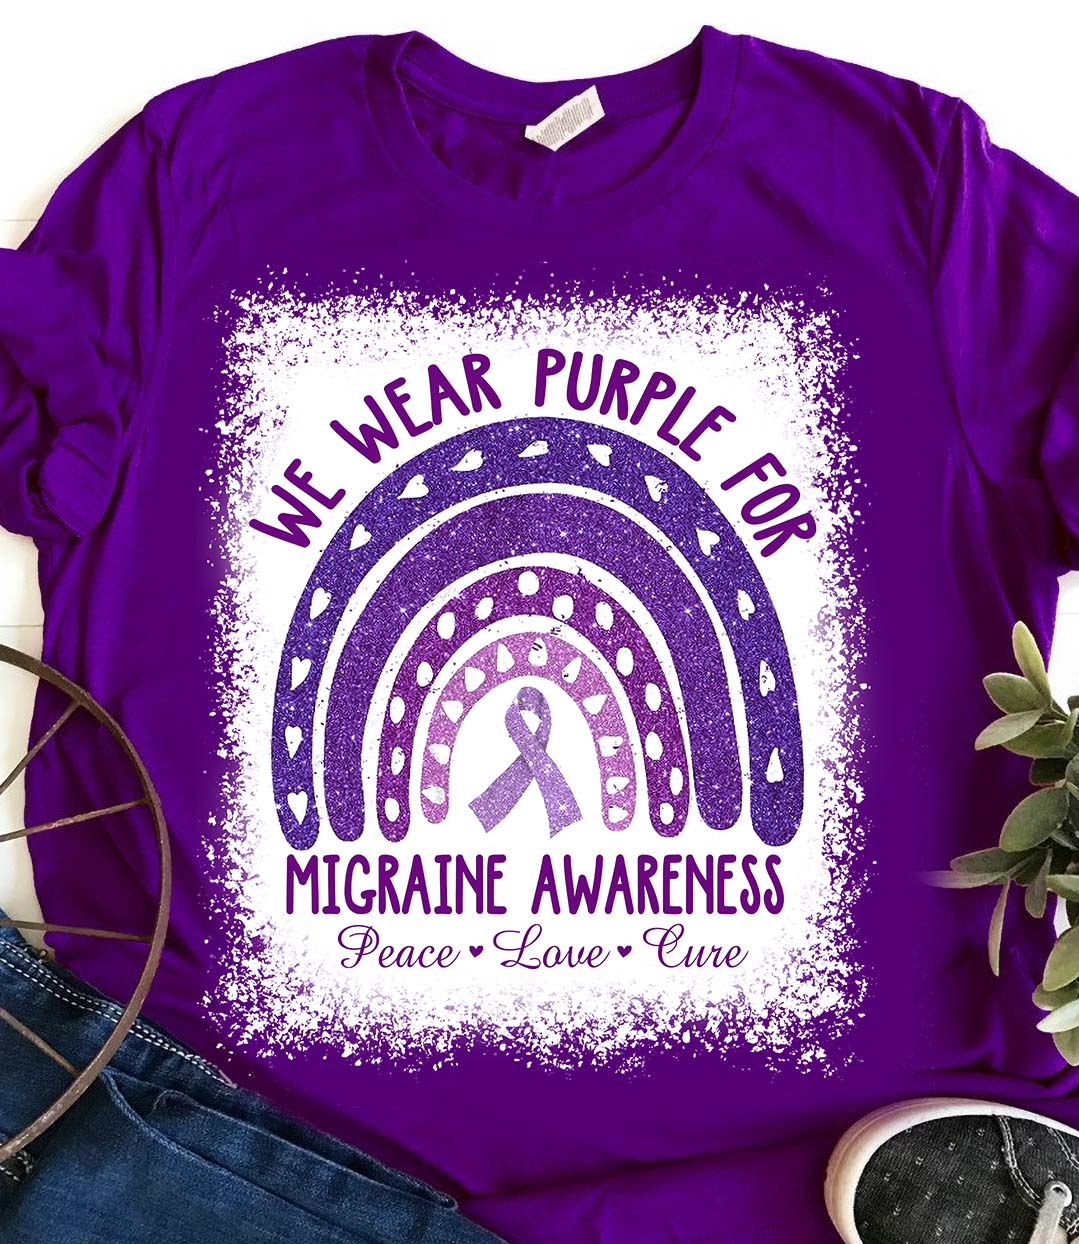 We wear purple for migraine awareness - Migraine awareness